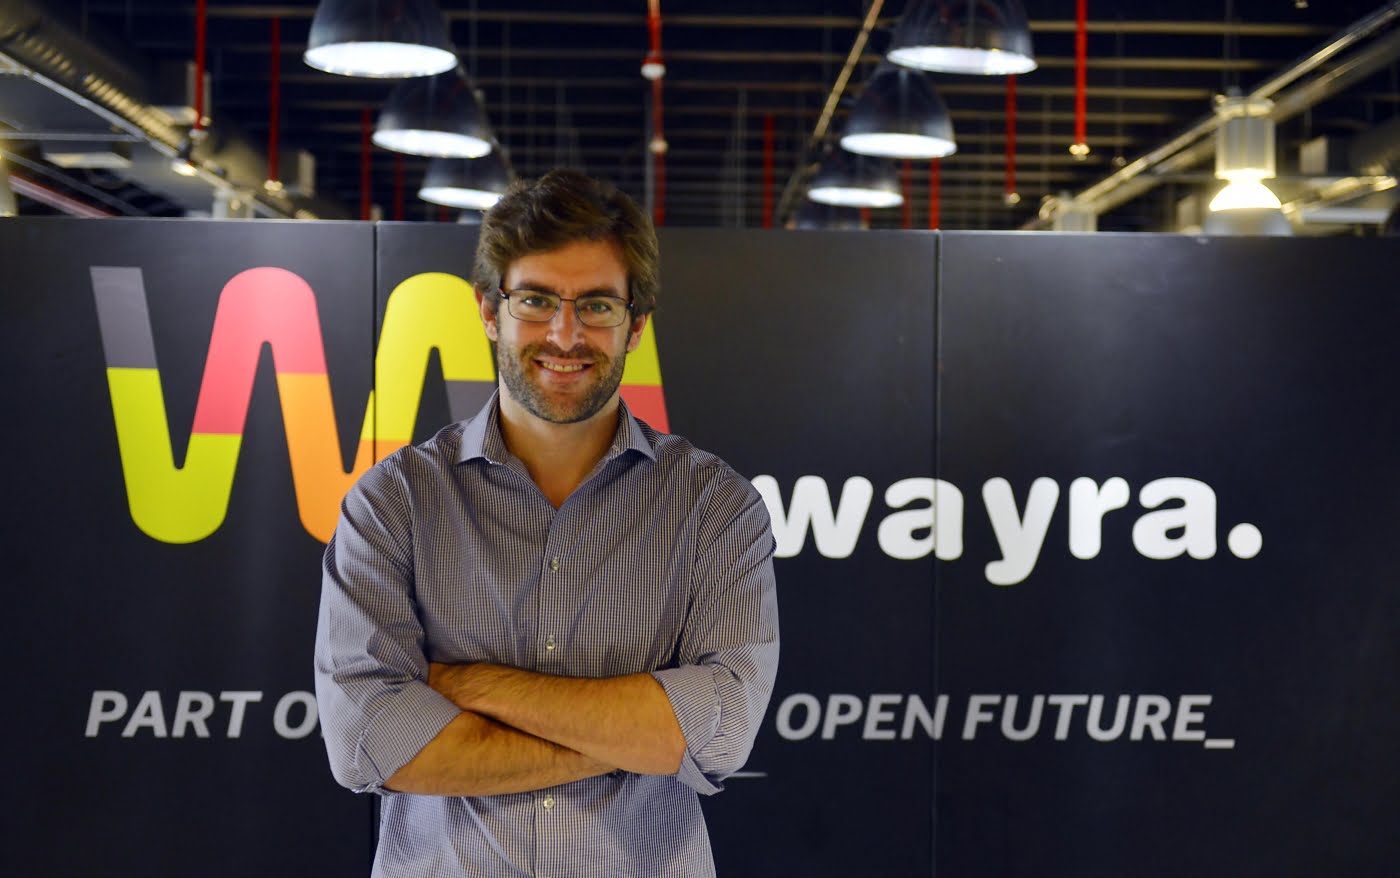 Renato passou pela Wayra como empreendedor com a Ocapi e volta agora para ajudar outras startups com sua experiência